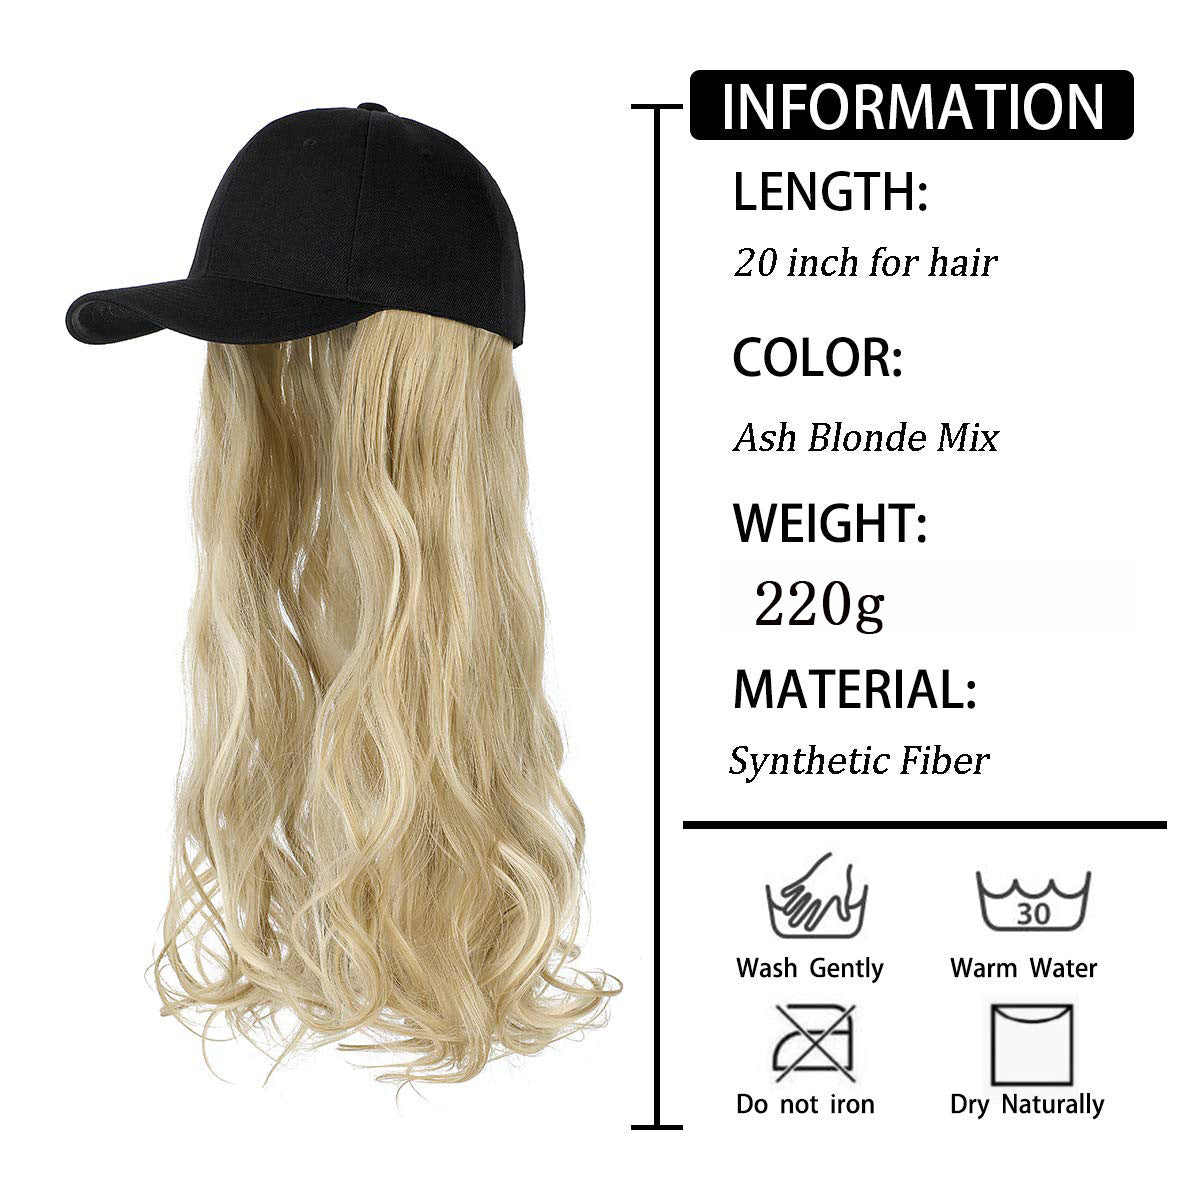 Långt vågigt lockigt hår Peruk Keps Naturlig integrerad basebollkeps Peruk i svart, blond och brun